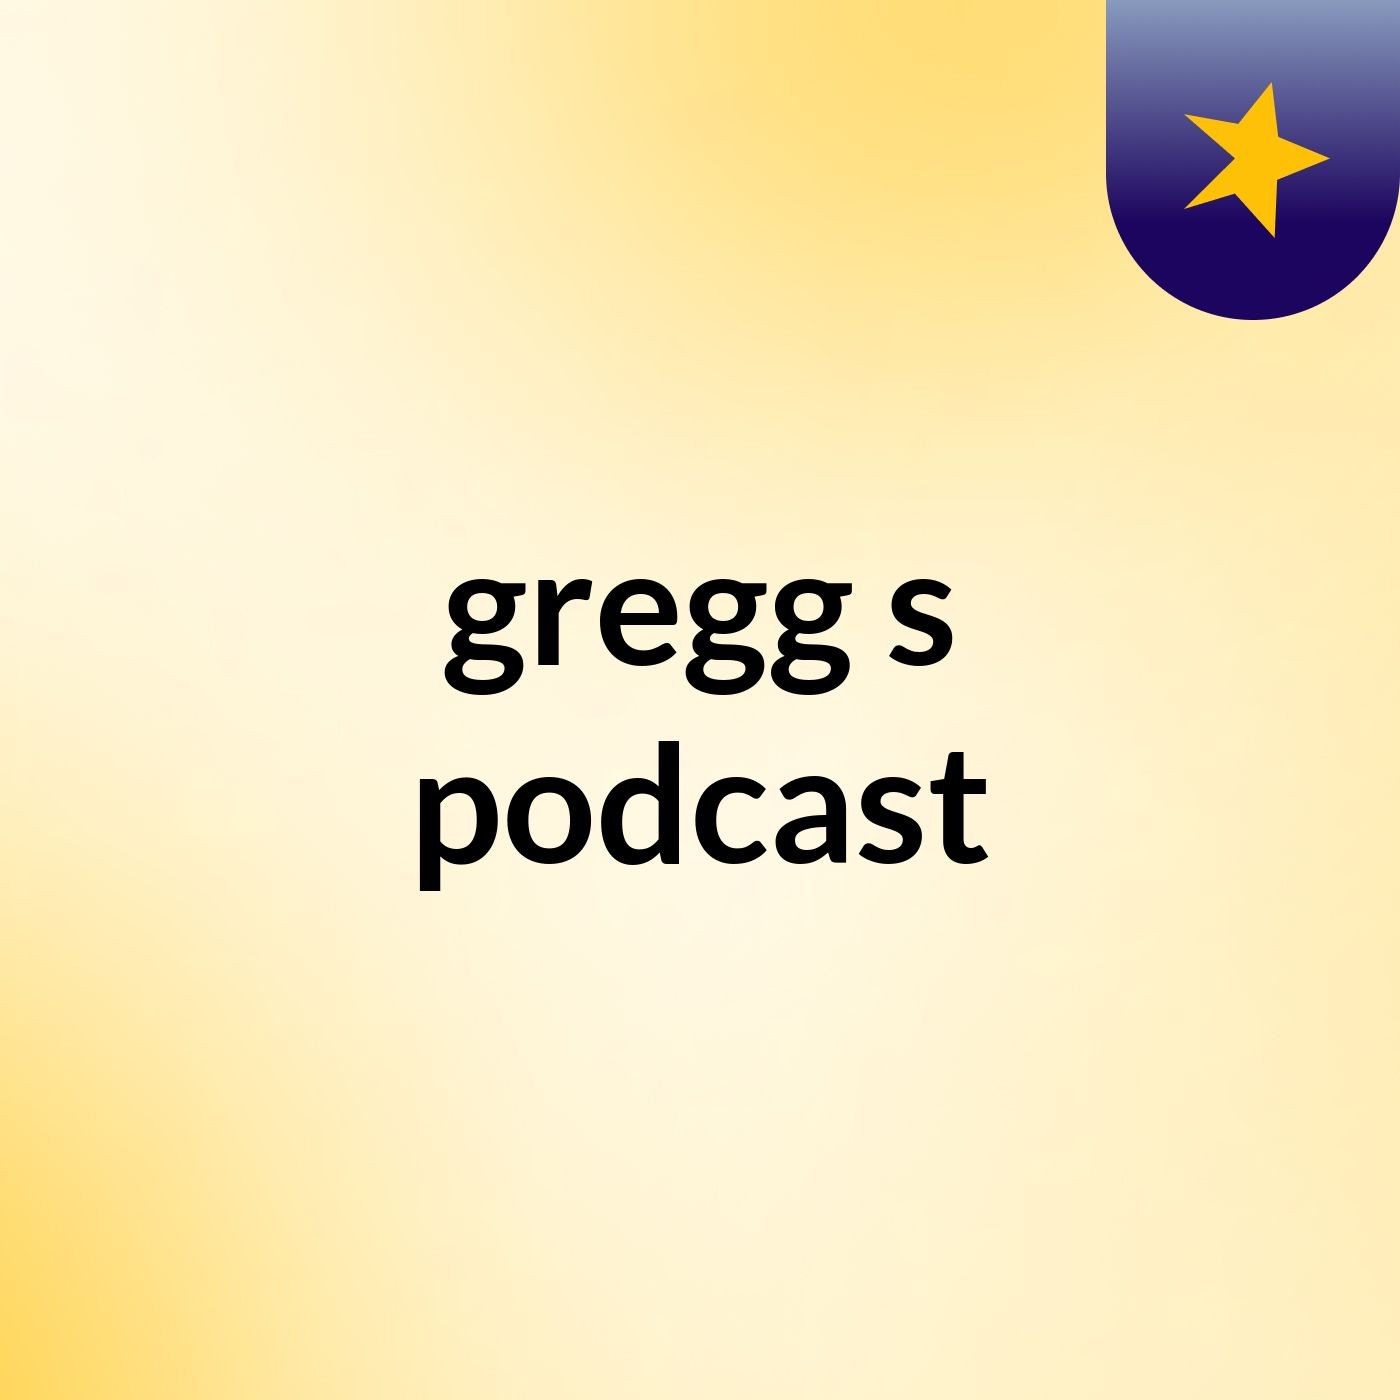 gregg's podcast